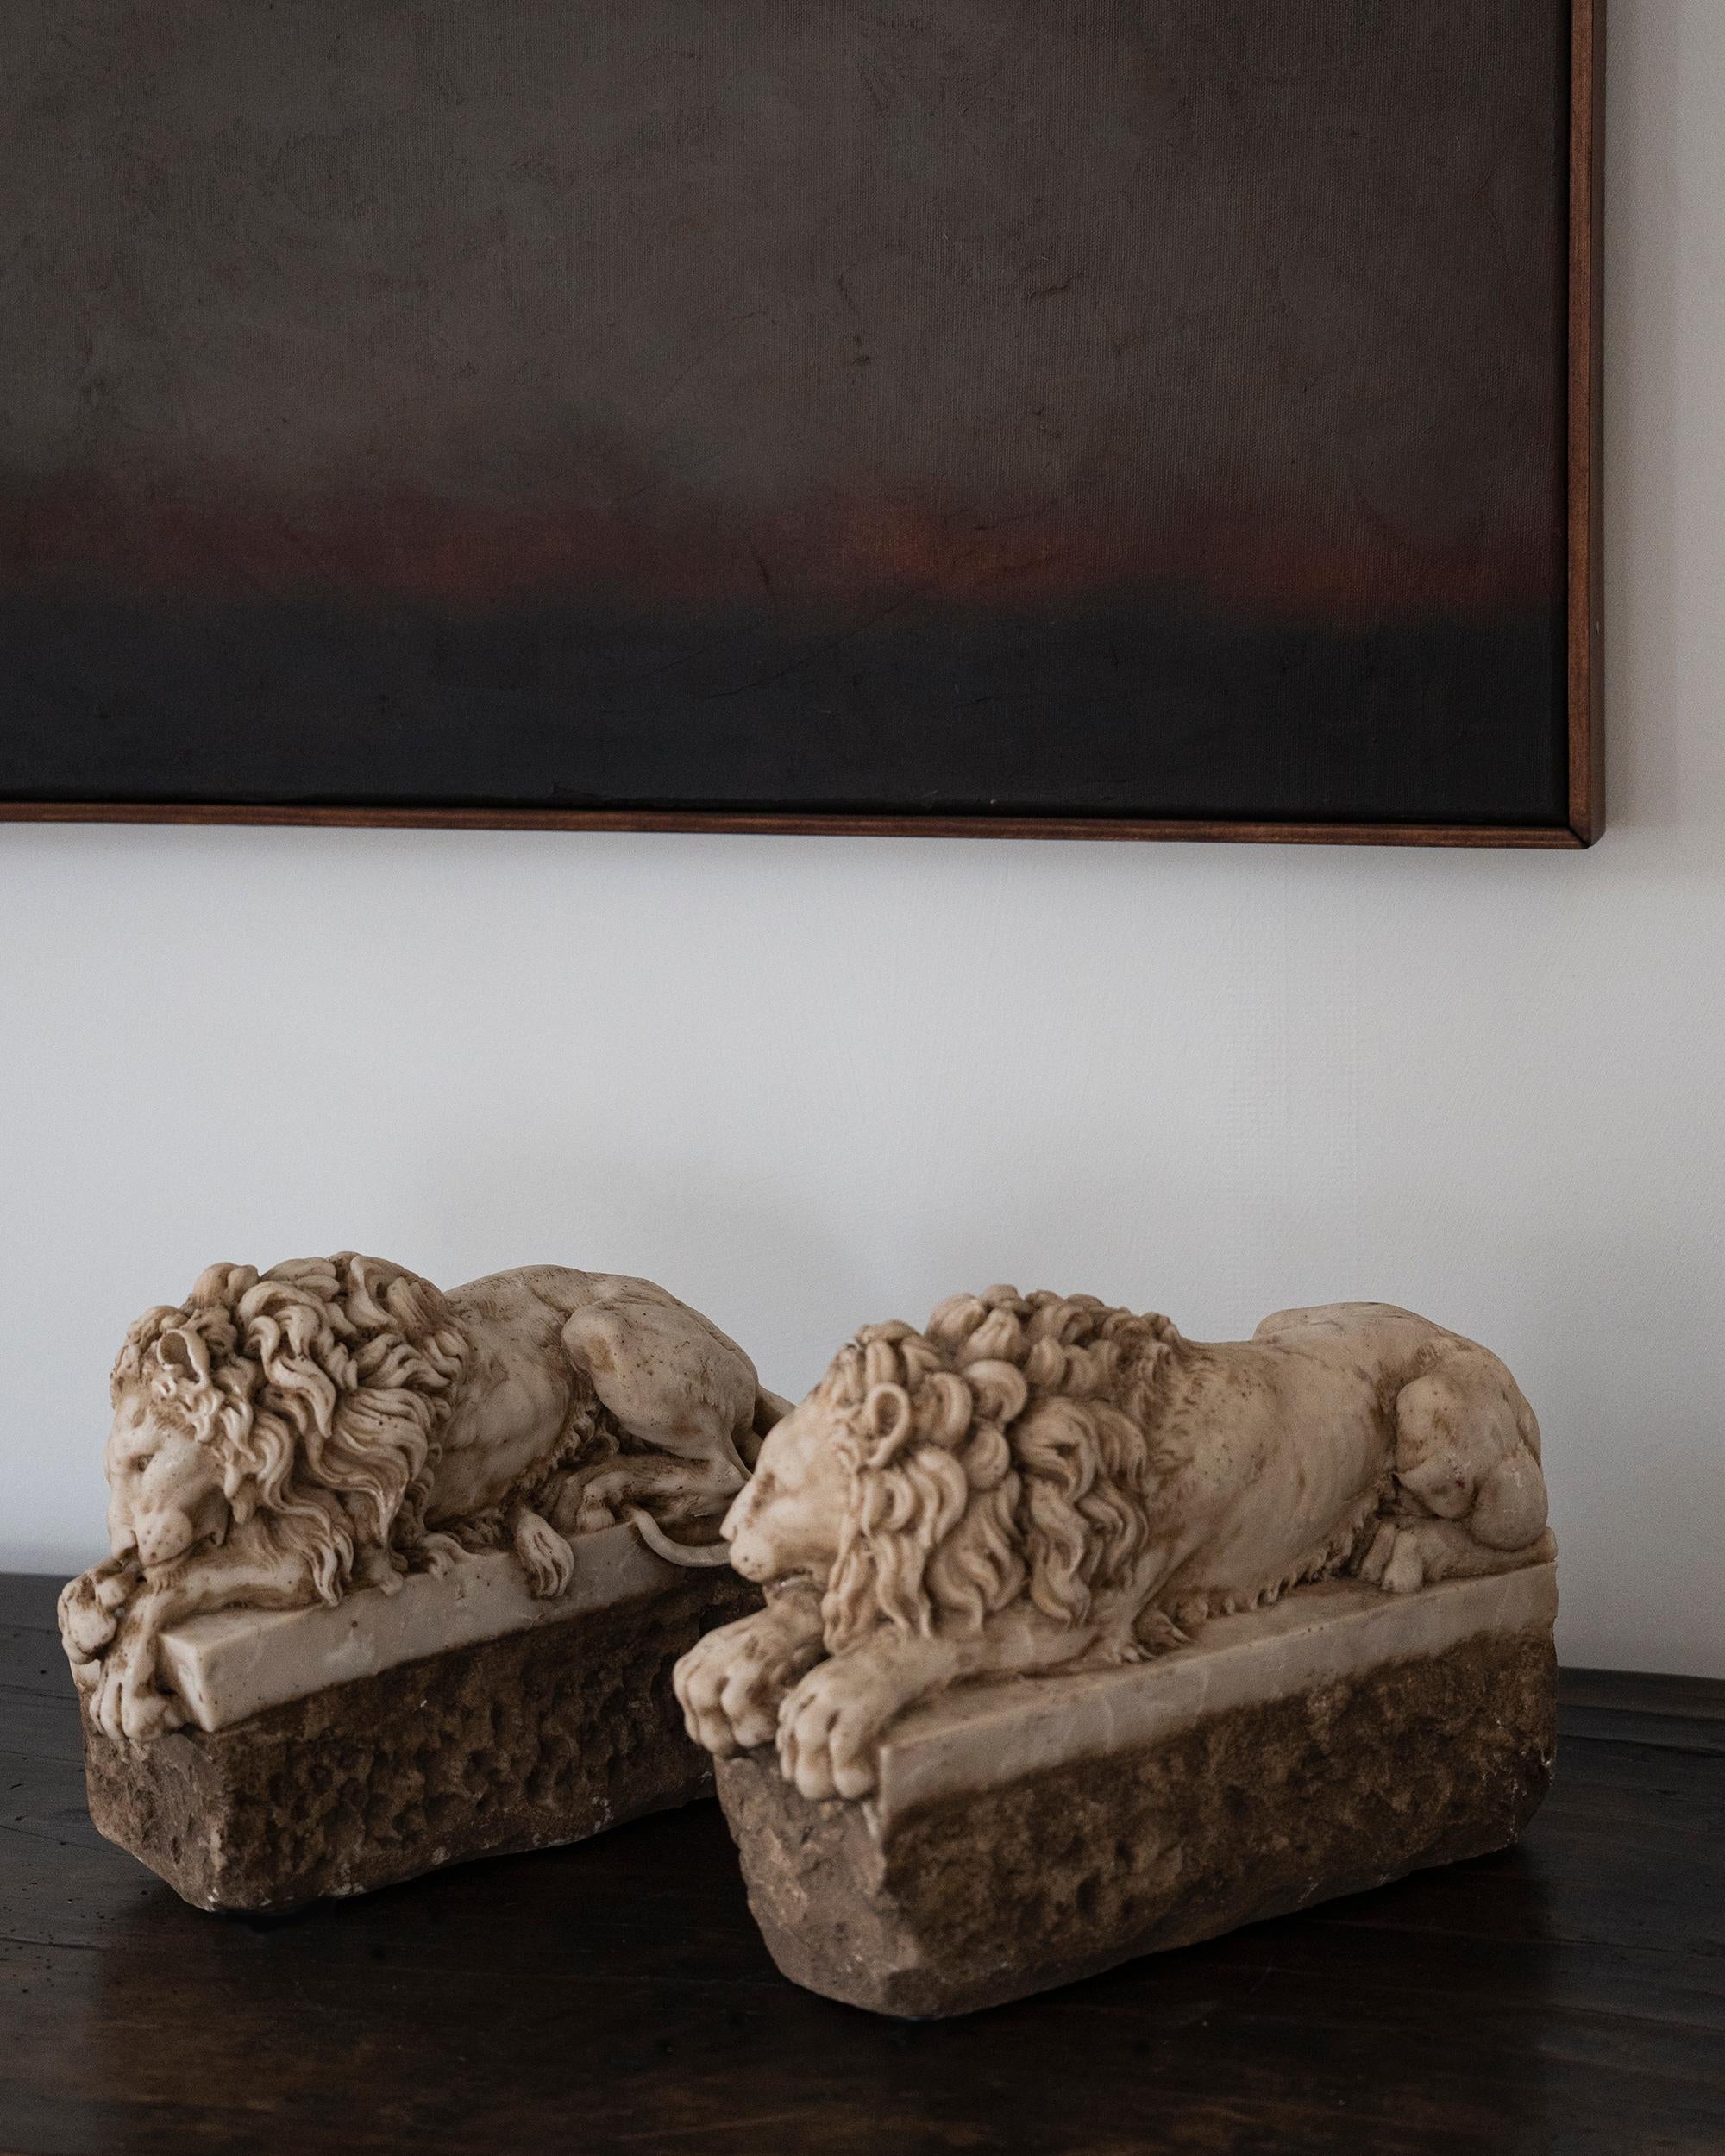 Pierre Paire de lions italiens en albâtre du 19ème siècle d'après Antonio Canova